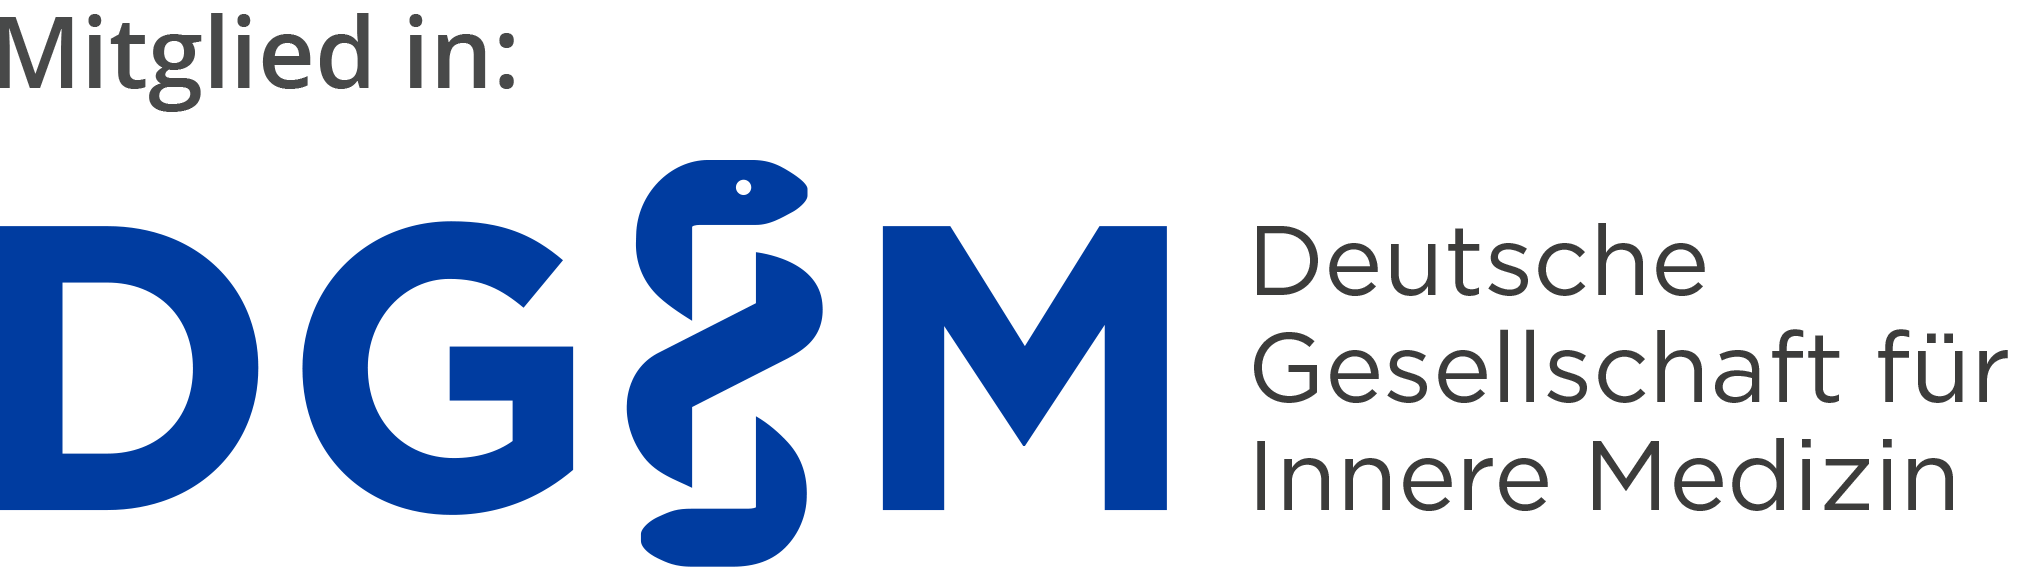 Logo Deutschen Gesellschaft für Innere Medizin e.V.